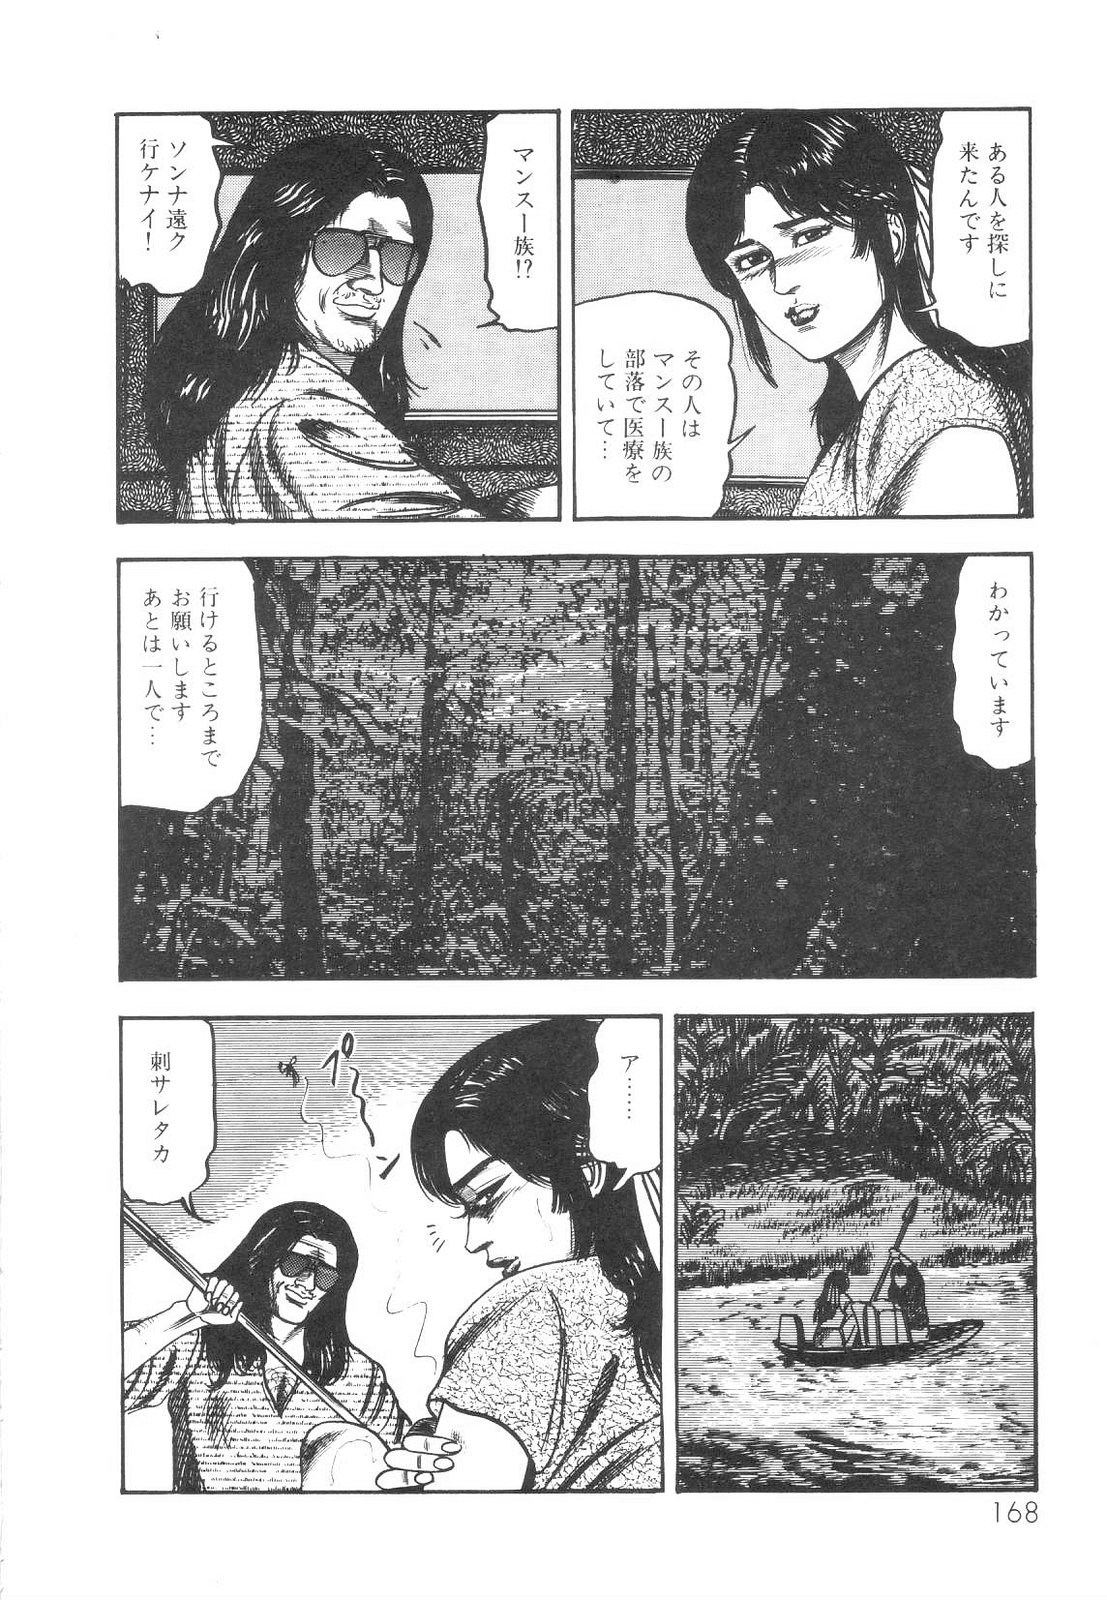 [Sanjou Tomomi] Shiro no Mokushiroku Vol. 1 - Sei Shojo Shion no Shou 168